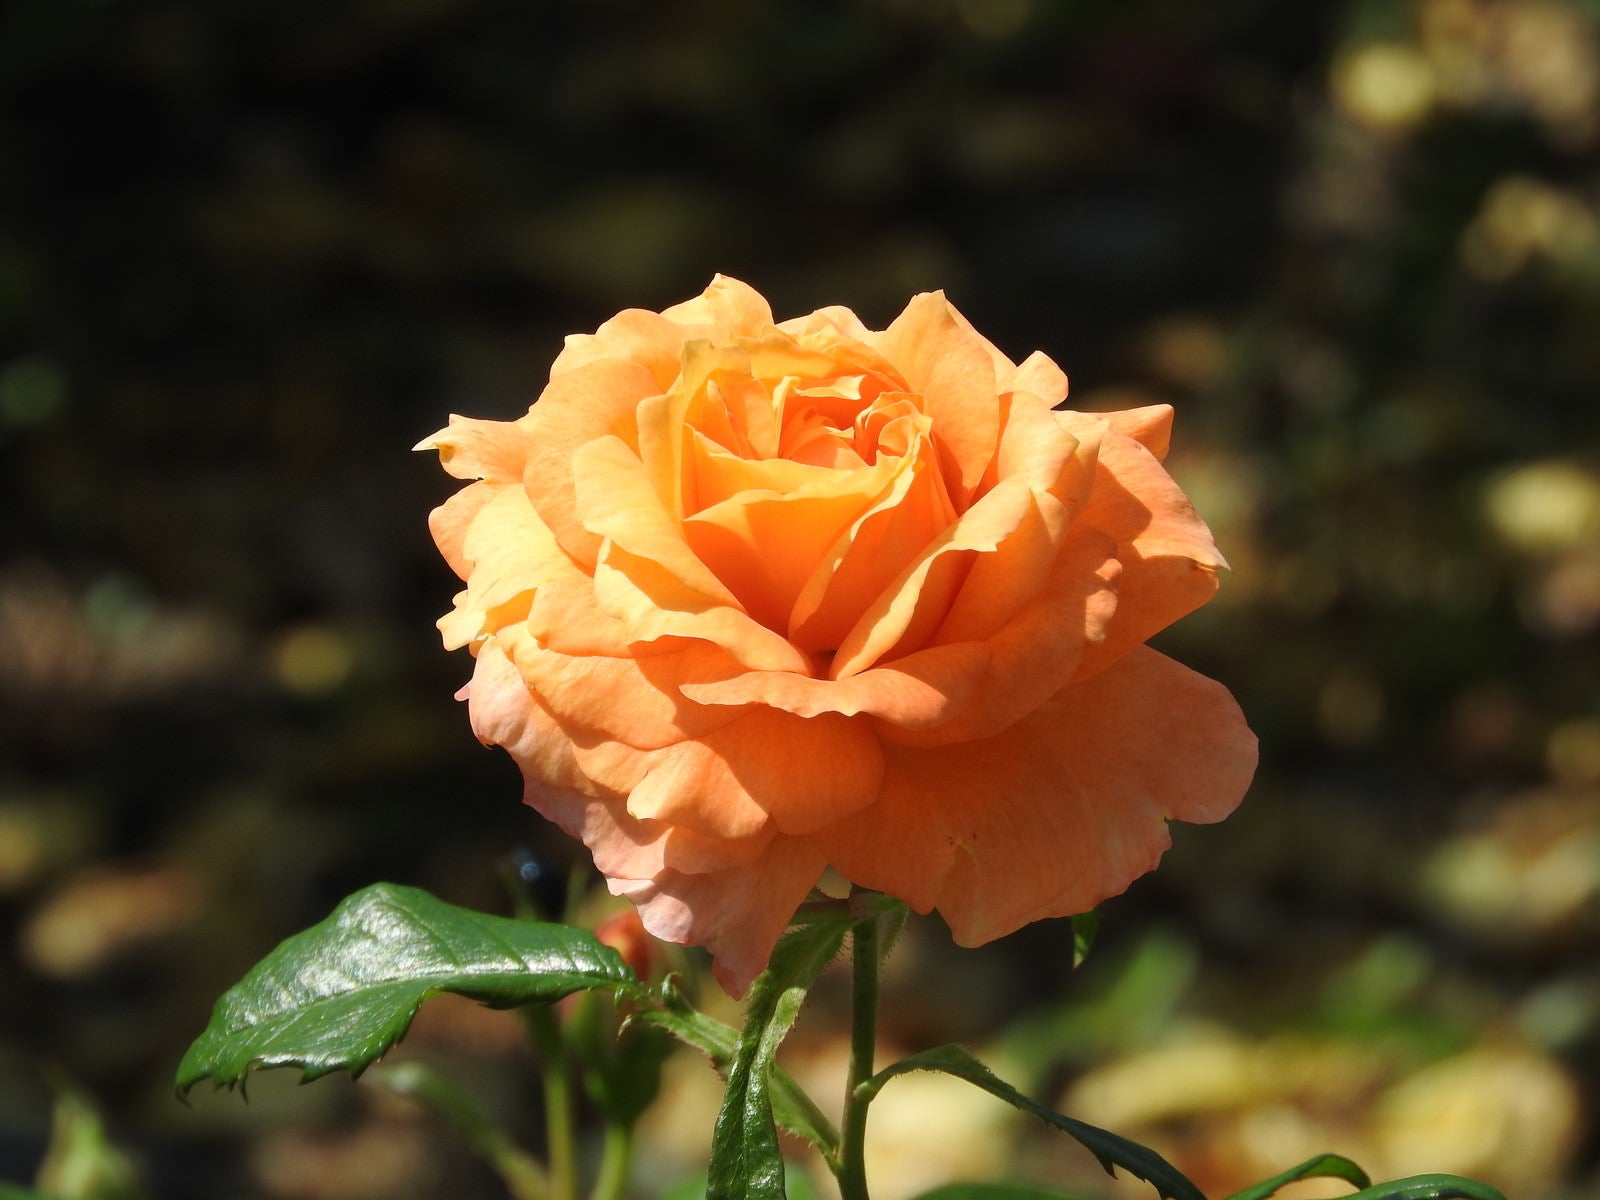 「開花したオレンジ色の薔薇」の写真